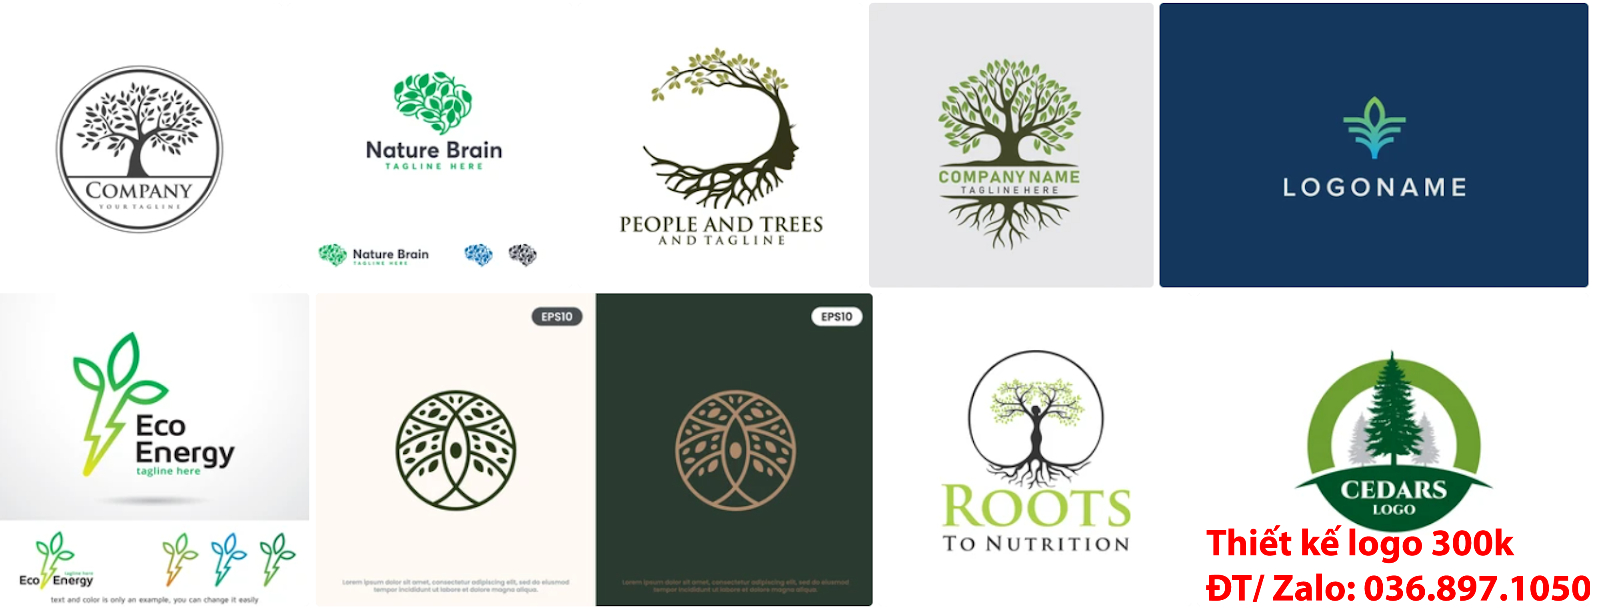 mẫu logo cây xanh chuyên nghiệp giá rẻ đẹp chất lượng uy tín tại Hà Nội